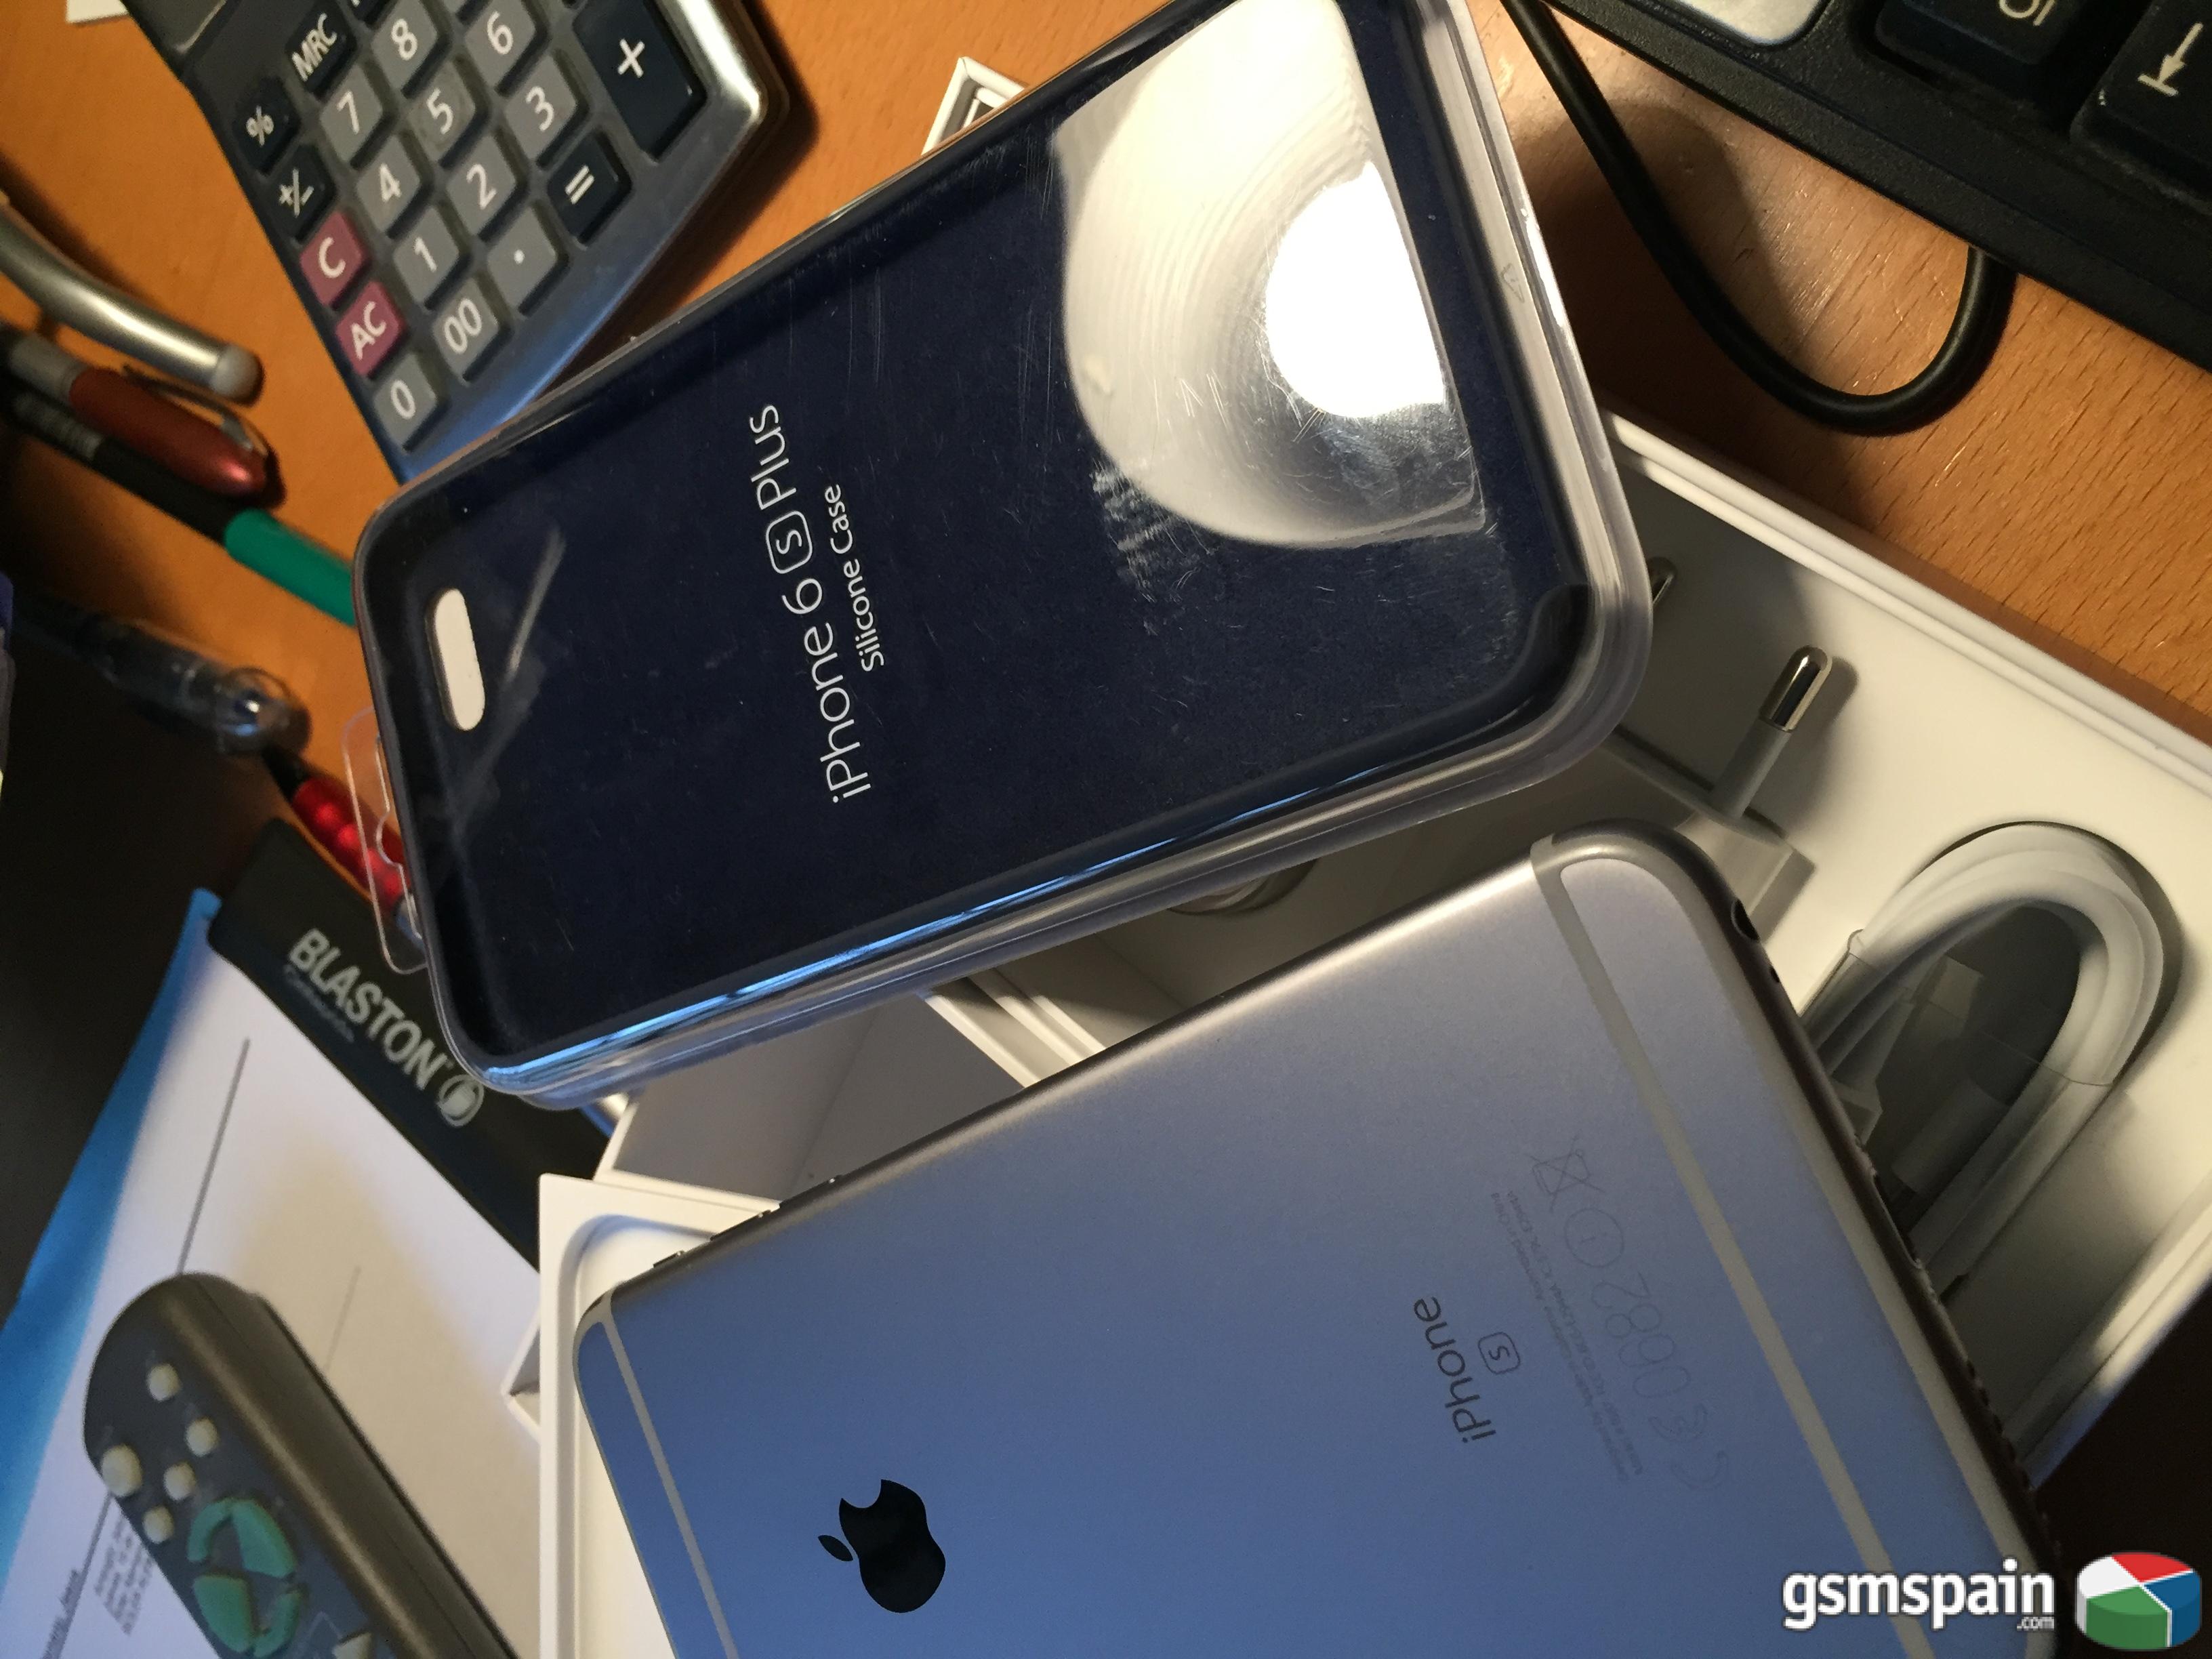 [VENDO] Iphone 6s Plus 16GB gris